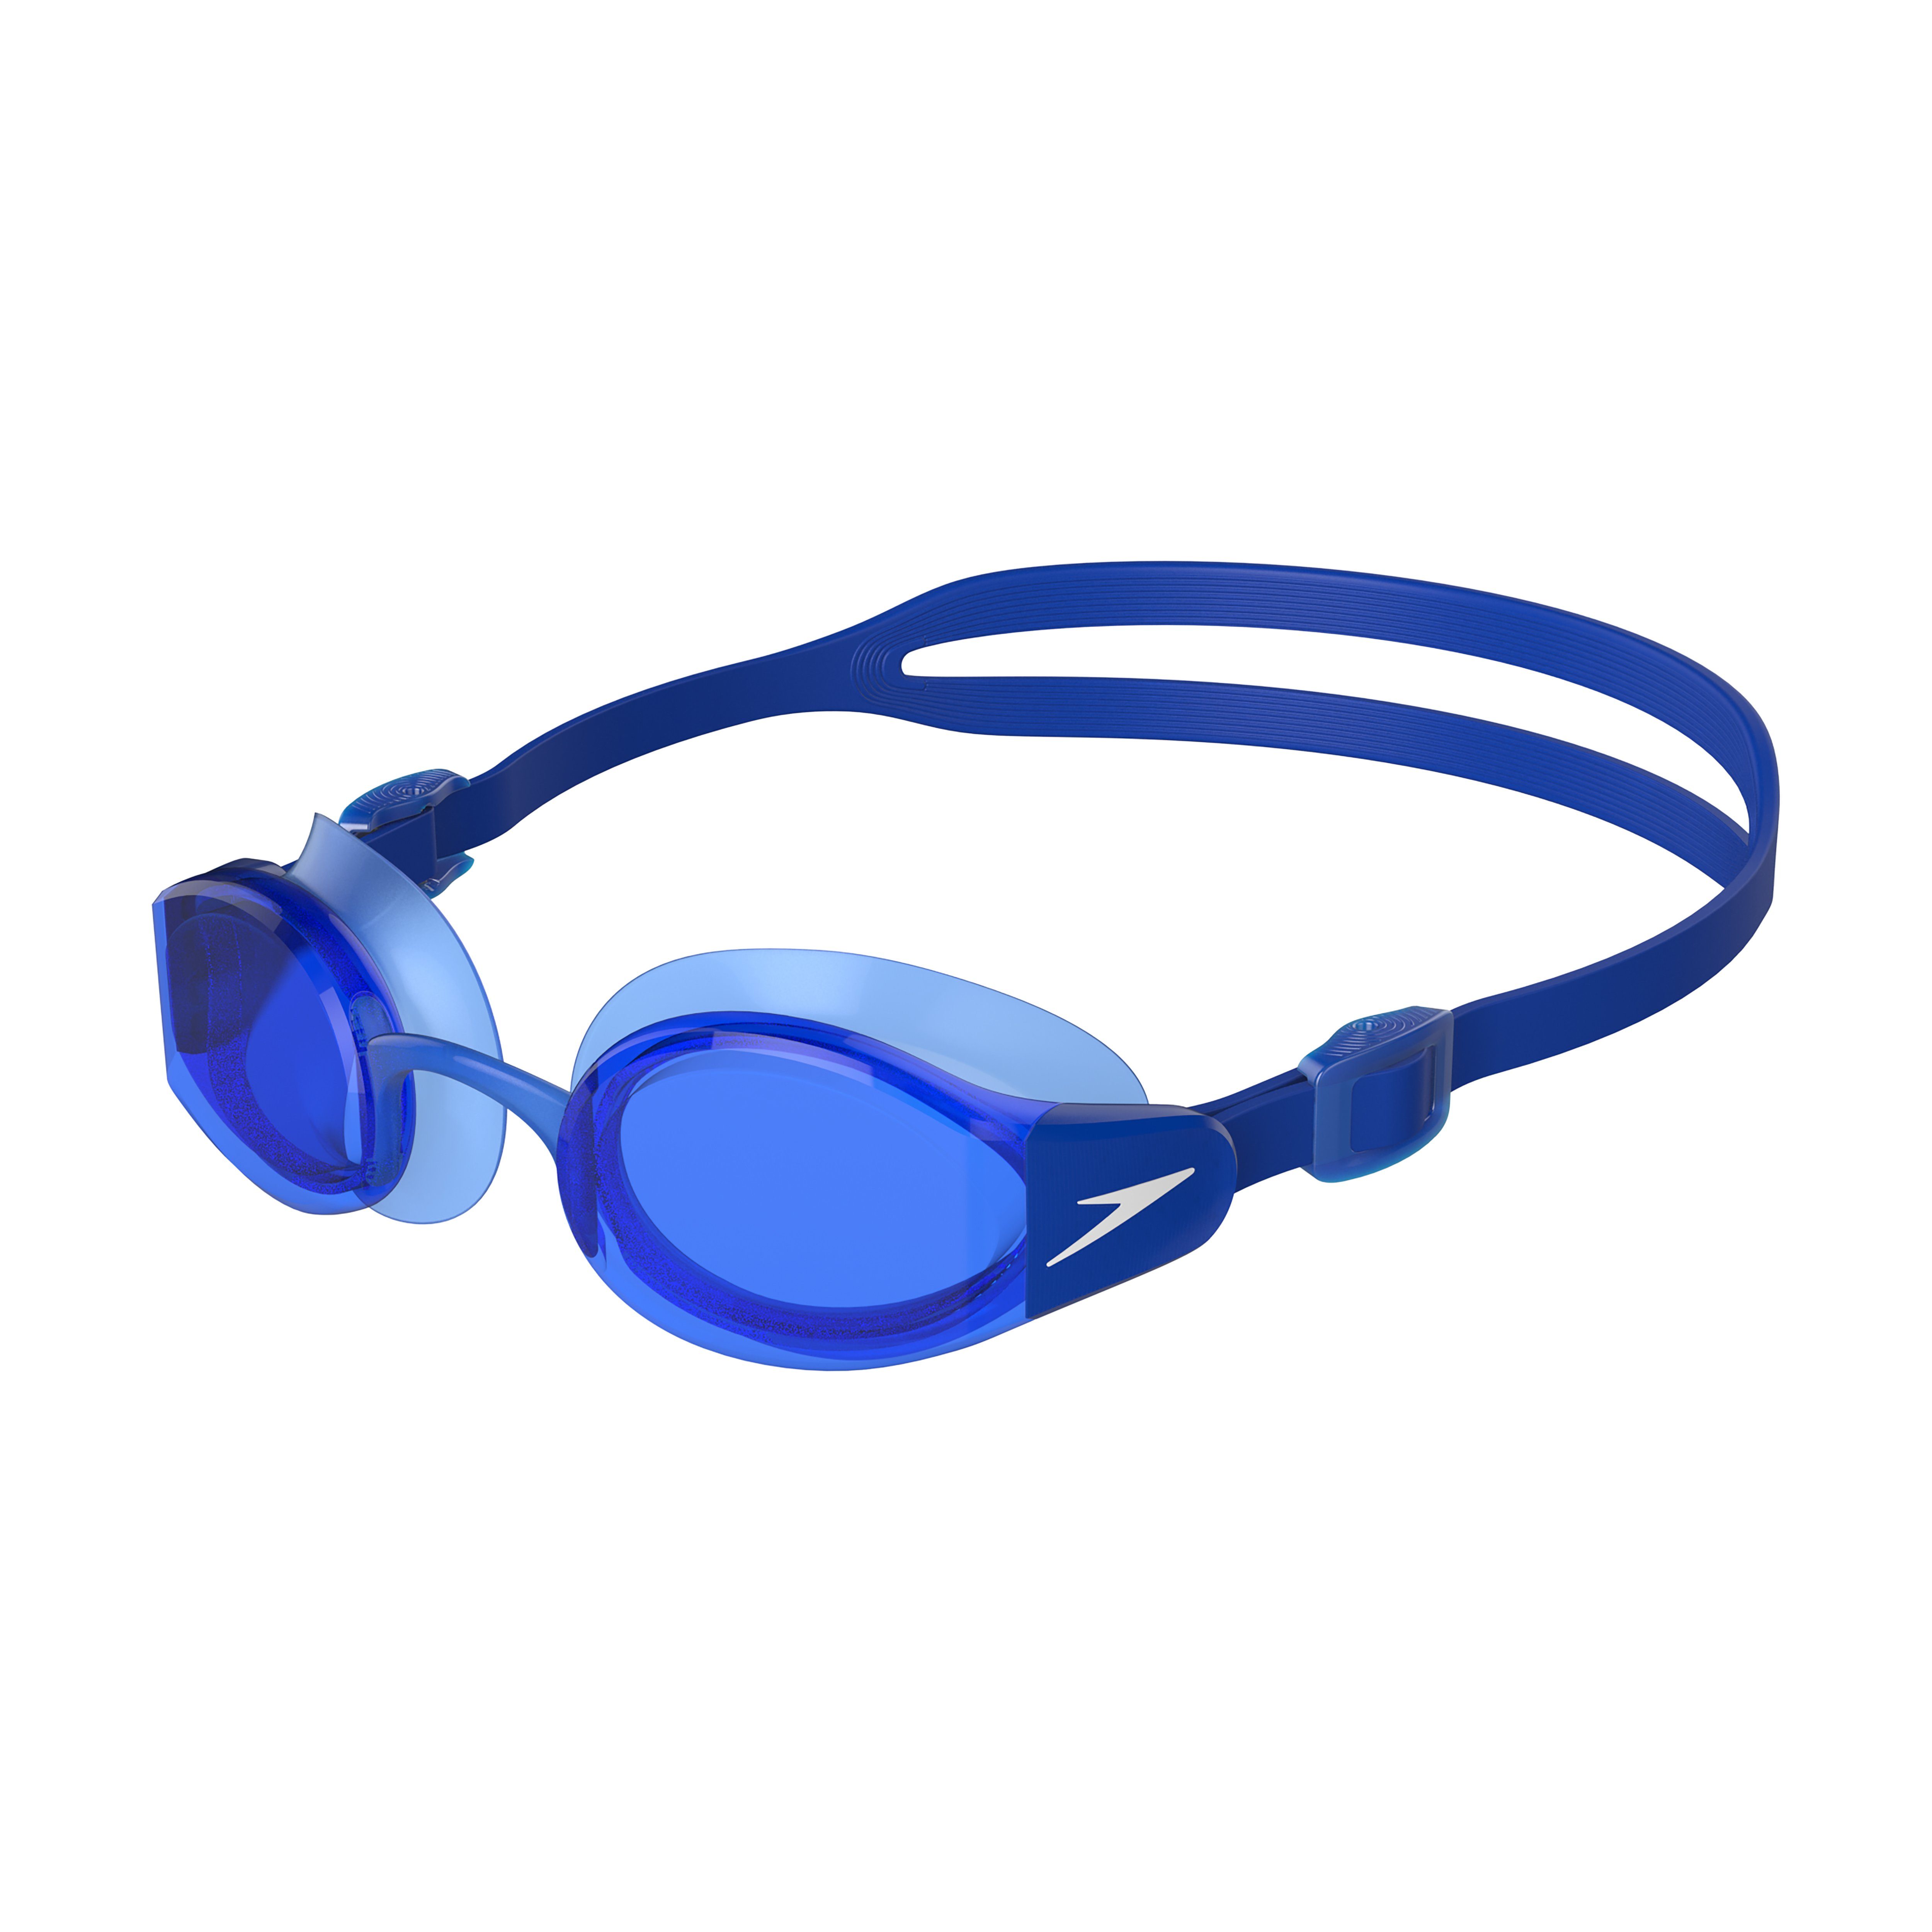 Speedo Schwimmbrille Speedo Mariner Pro, Anti-Fog & UV-Schutz Beautiful Blue/Translucent/White/Blue